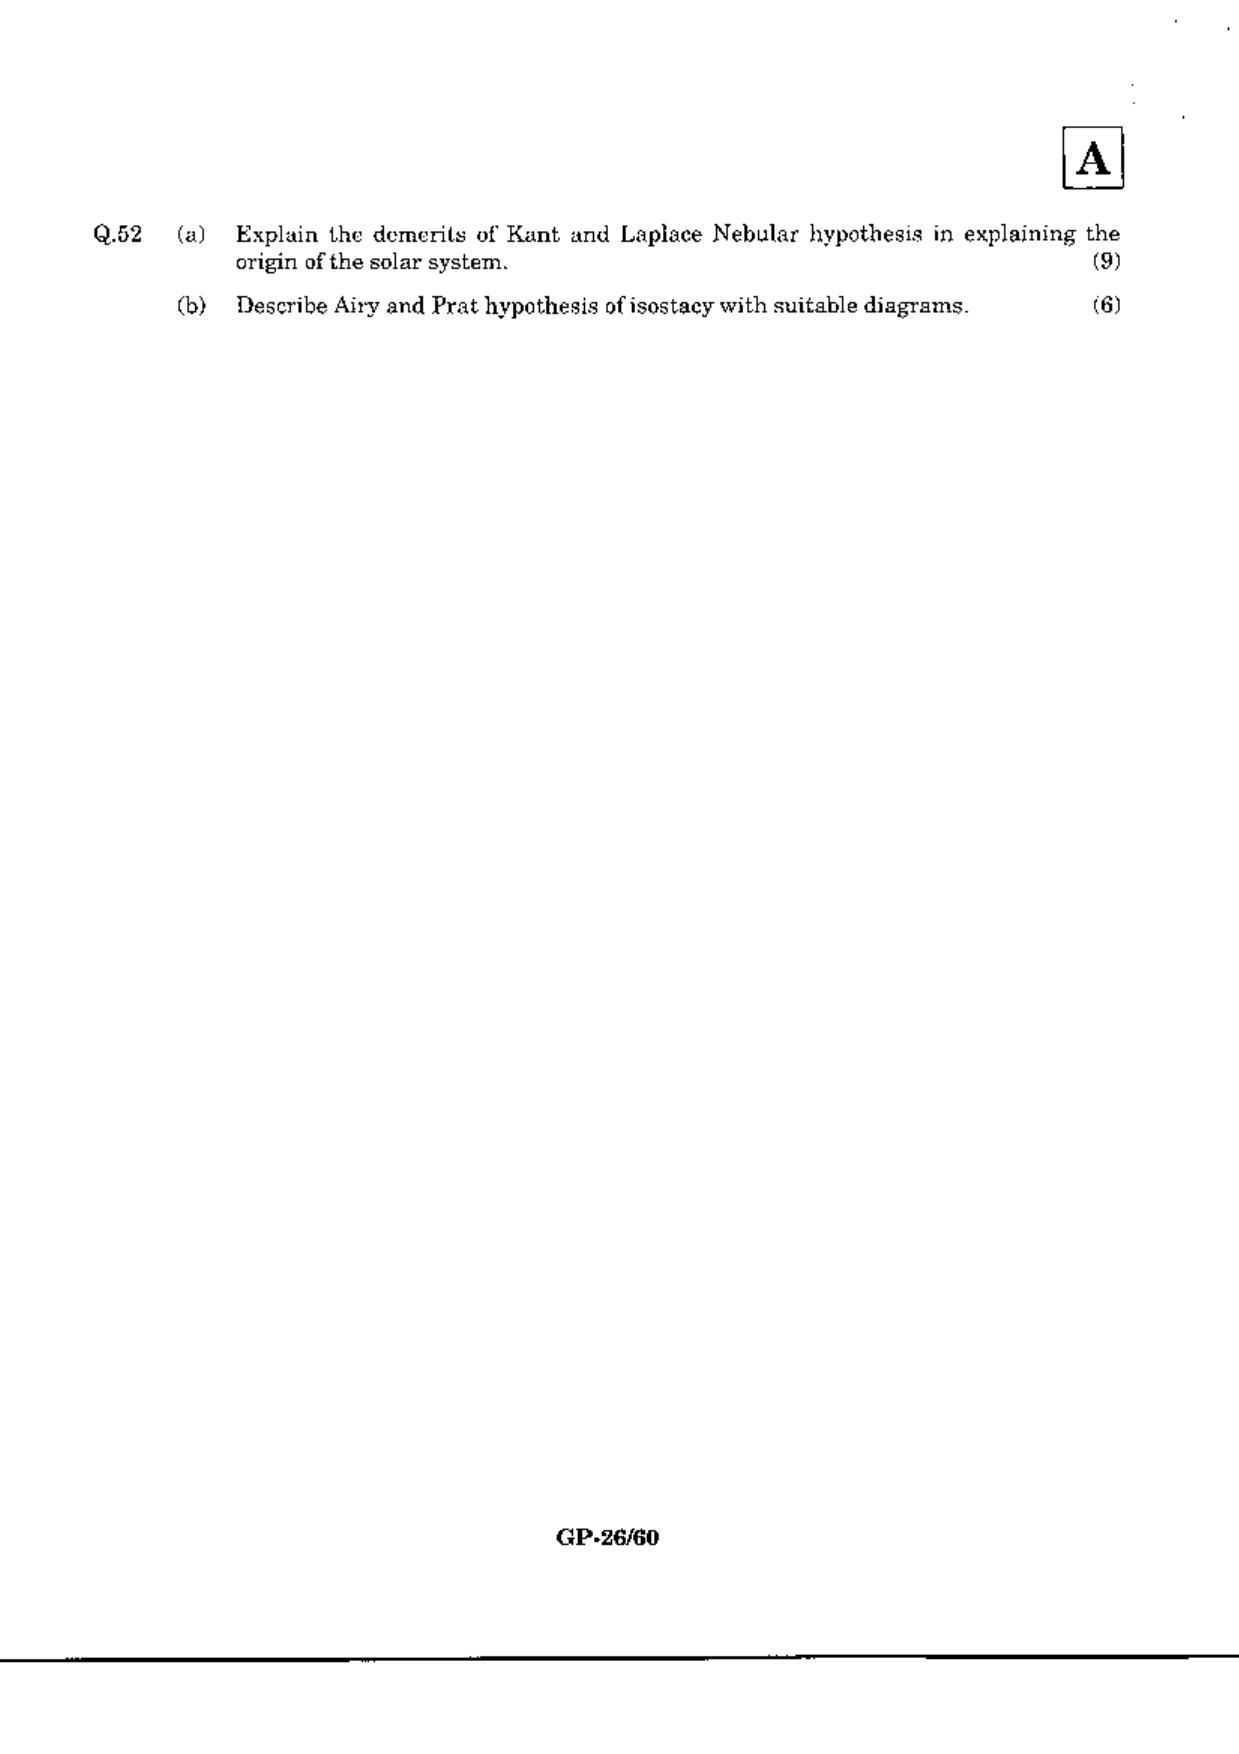 JAM 2010: GP Question Paper - Page 28